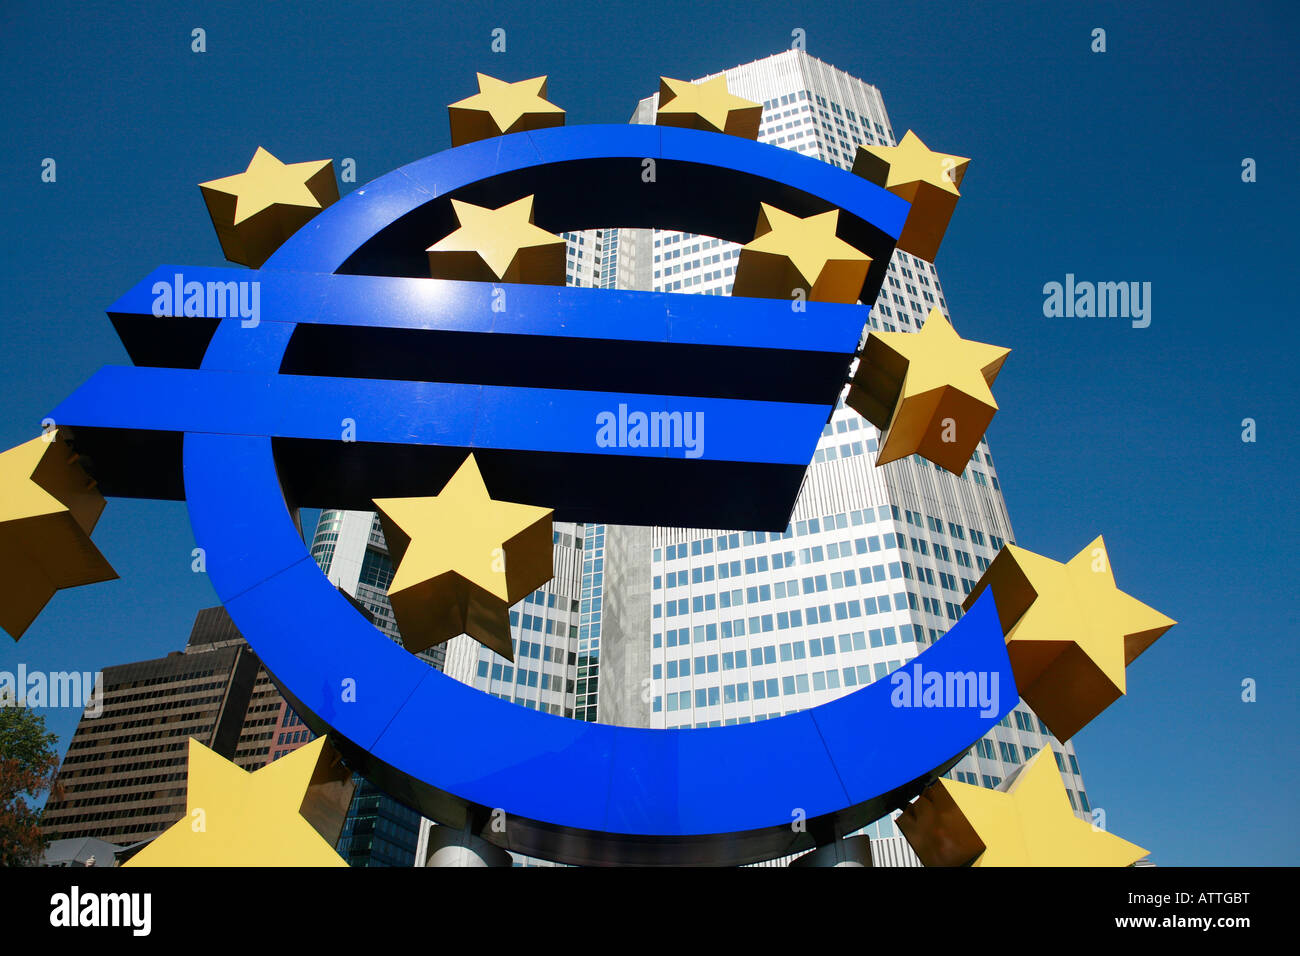 Signo de Euro, el símbolo del euro y del Banco Central Europeo (BCE), Frankfurt am Main, Hessen, Alemania, en Alemania, en Europa, la UE Foto de stock